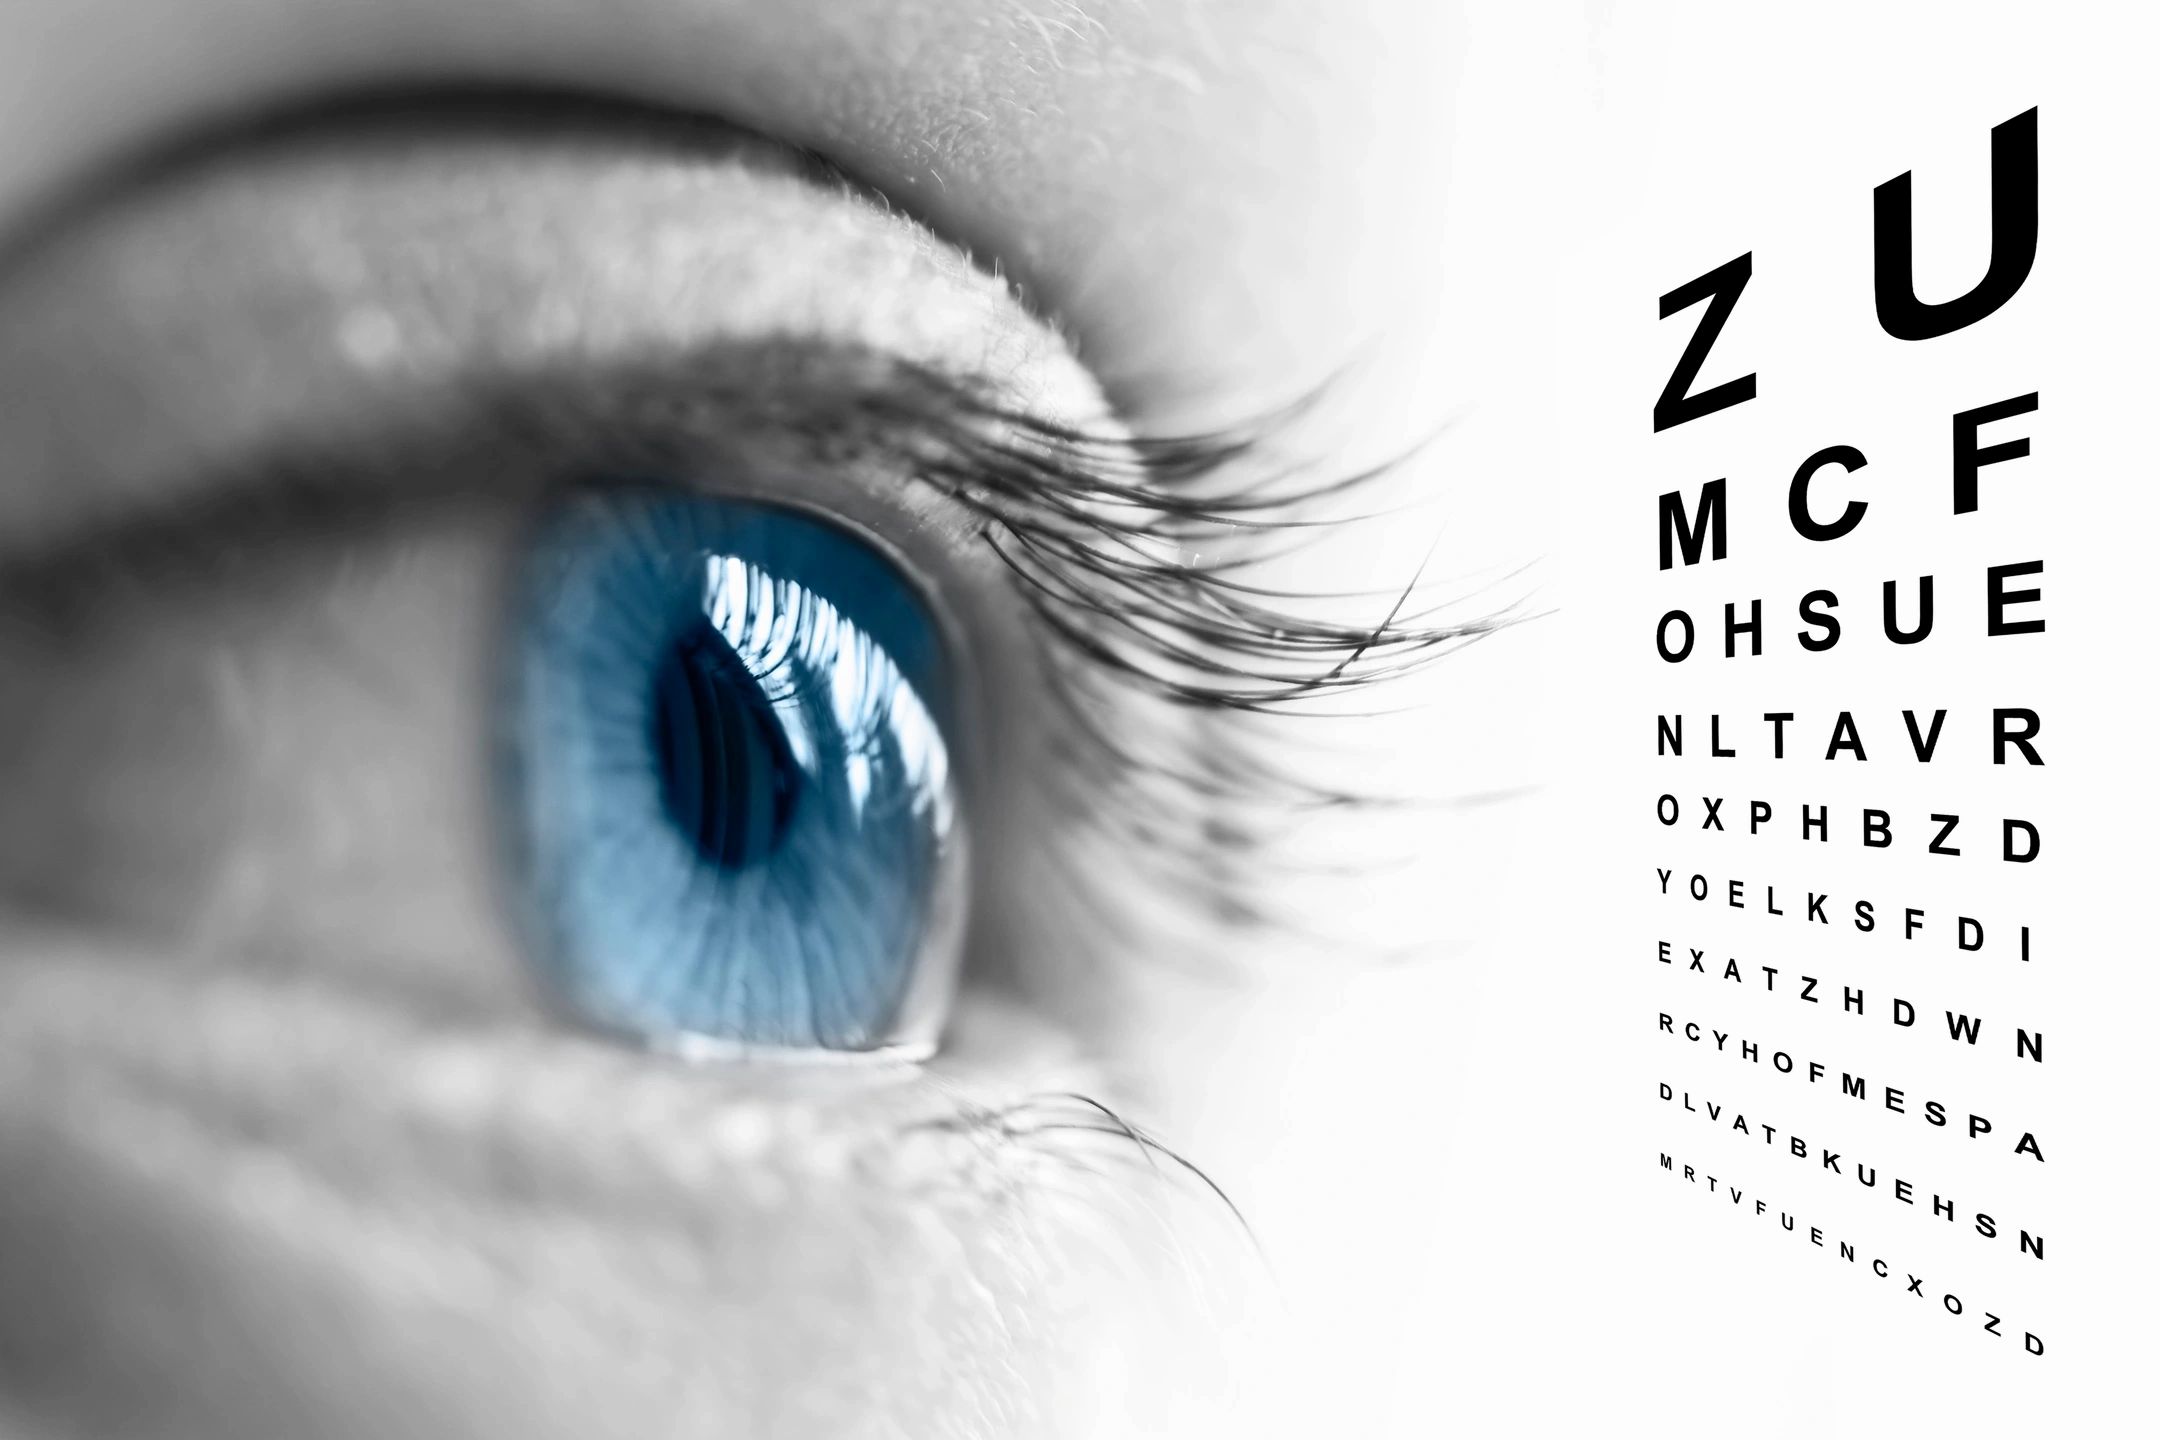 Eyeball and eye exam